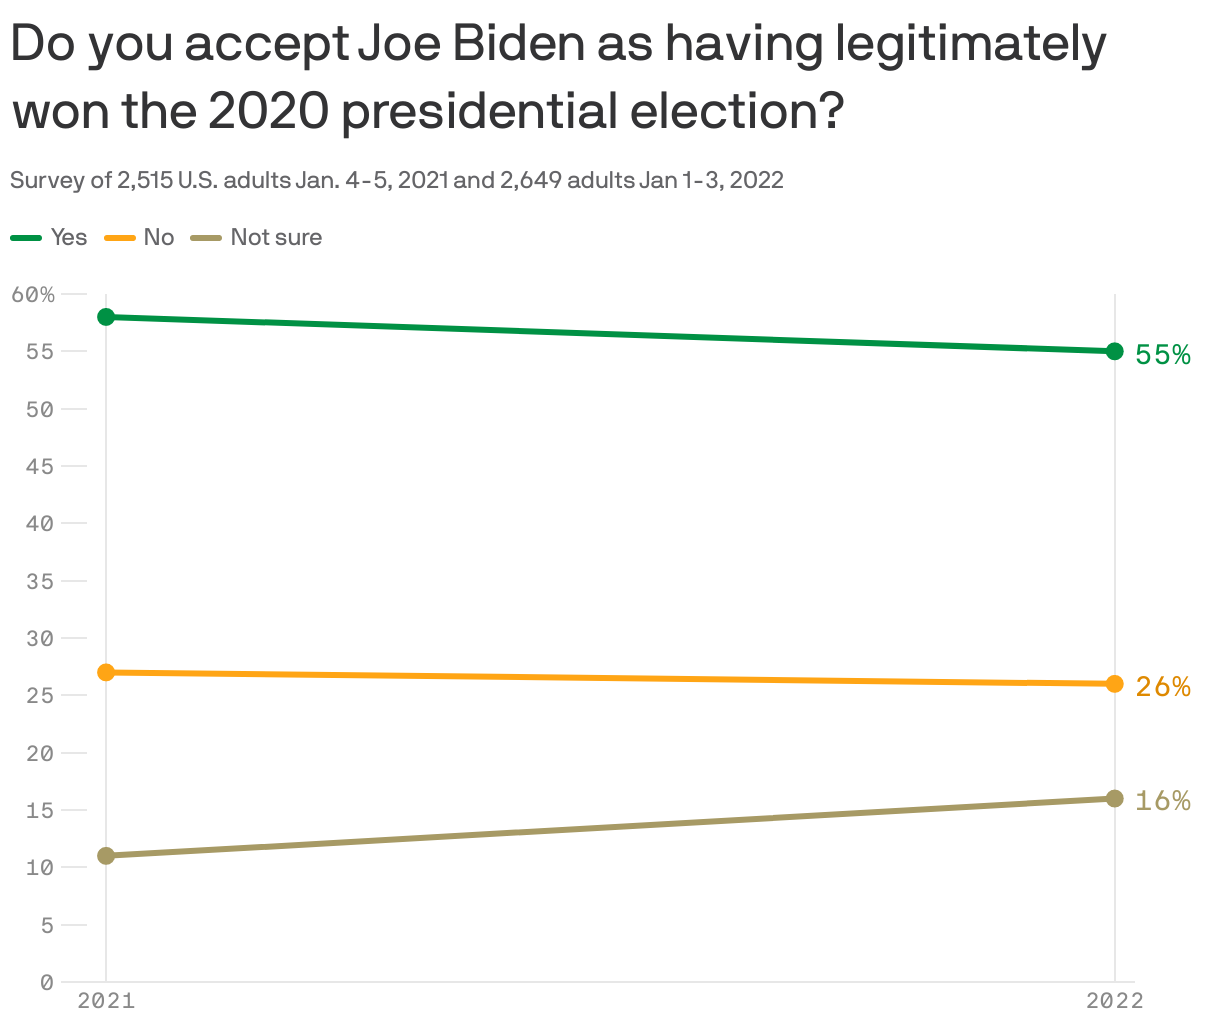 Do you accept Joe Biden as having legitimately won the 2020 presidential election?